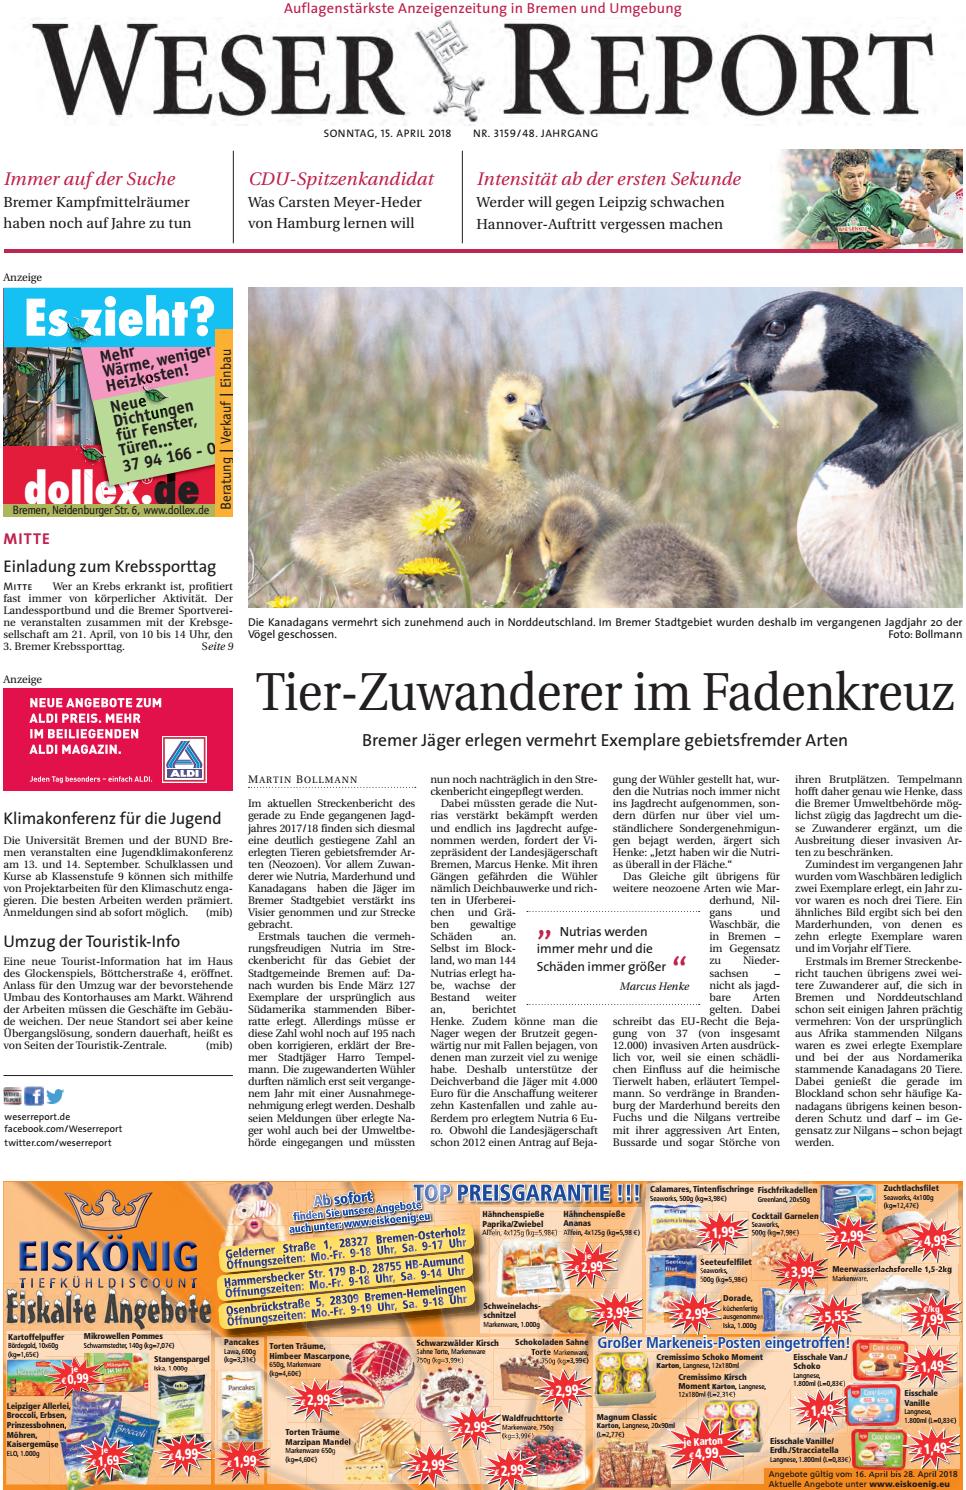 Otto Gartenkatalog Best Of Weser Report Mitte Vom 15 04 2018 by Kps